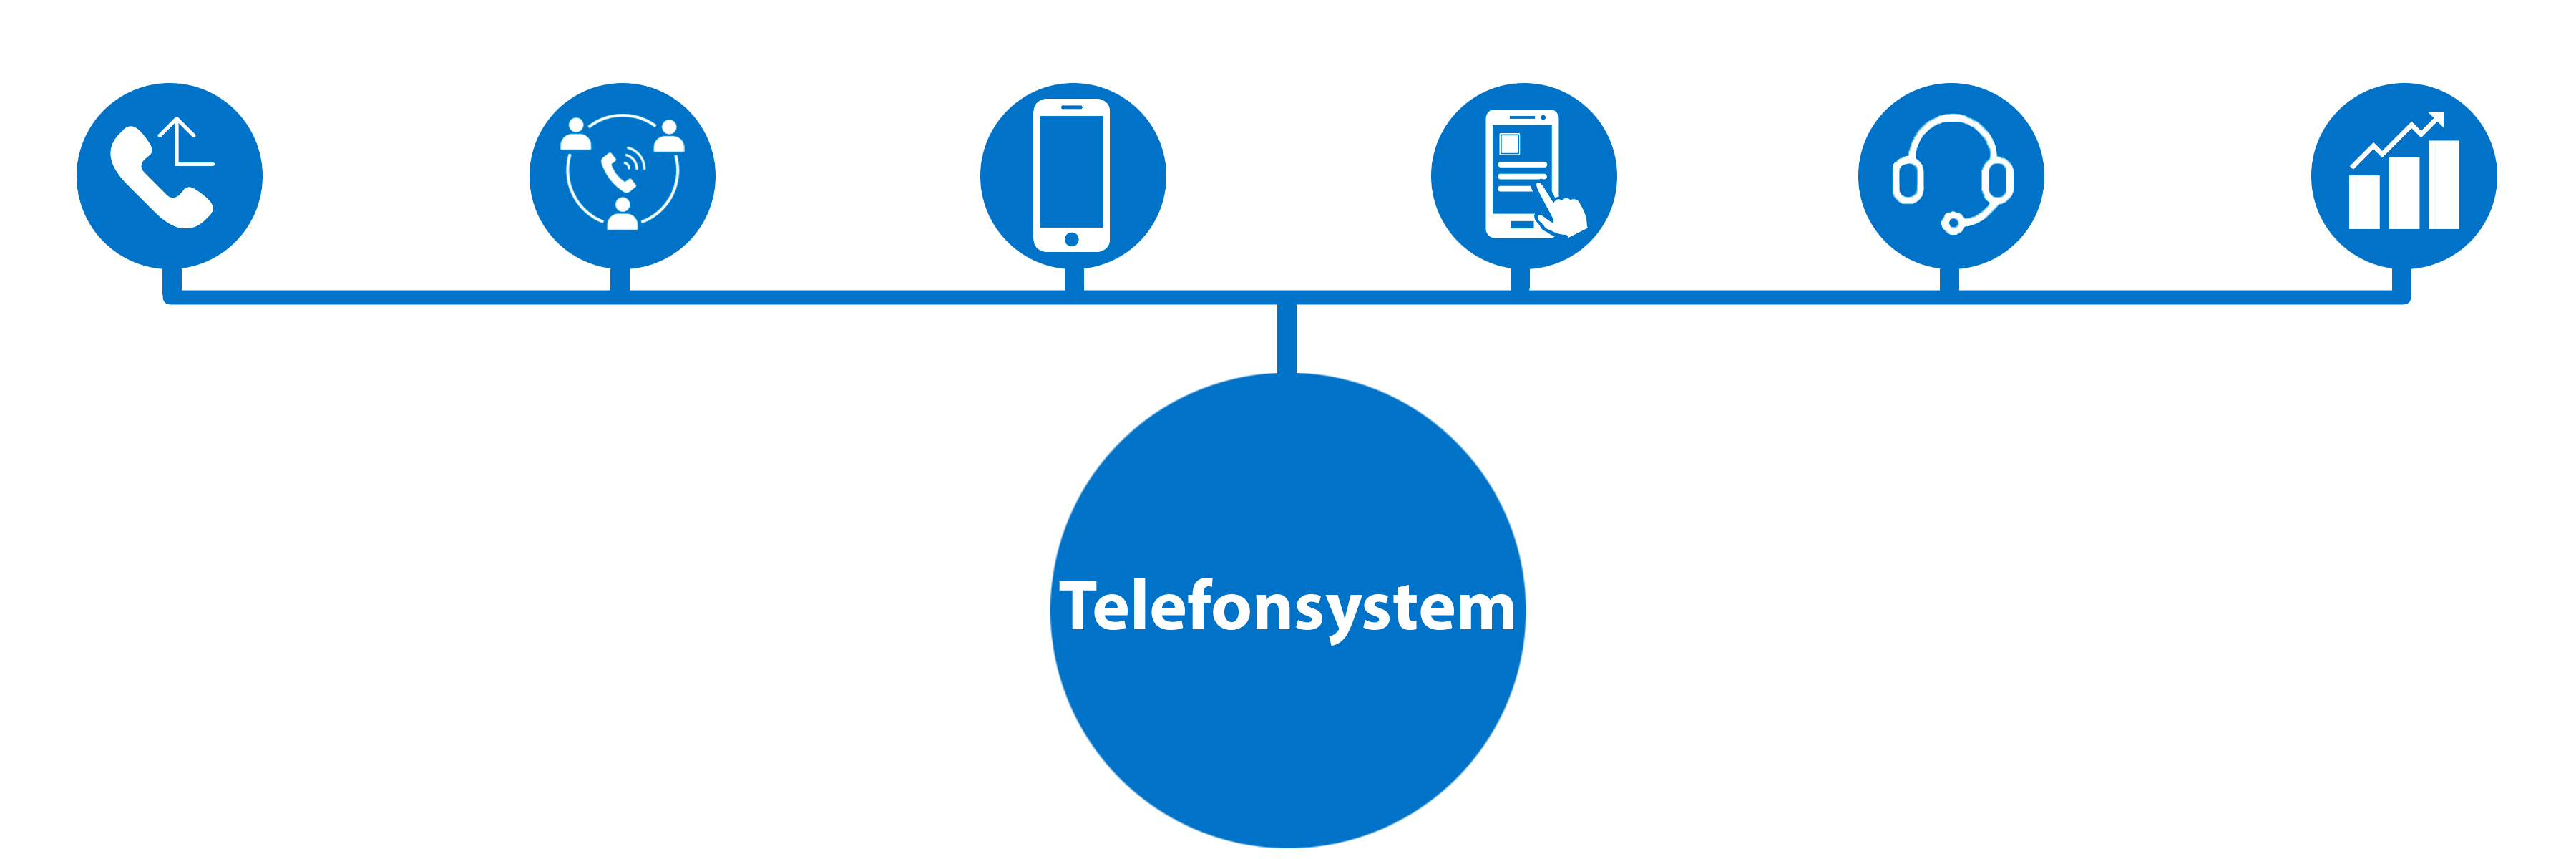 Telefonsystem inkludere omstilling, telefonmøde, softphone, mobiltelefoni til erhverv og wallboard.